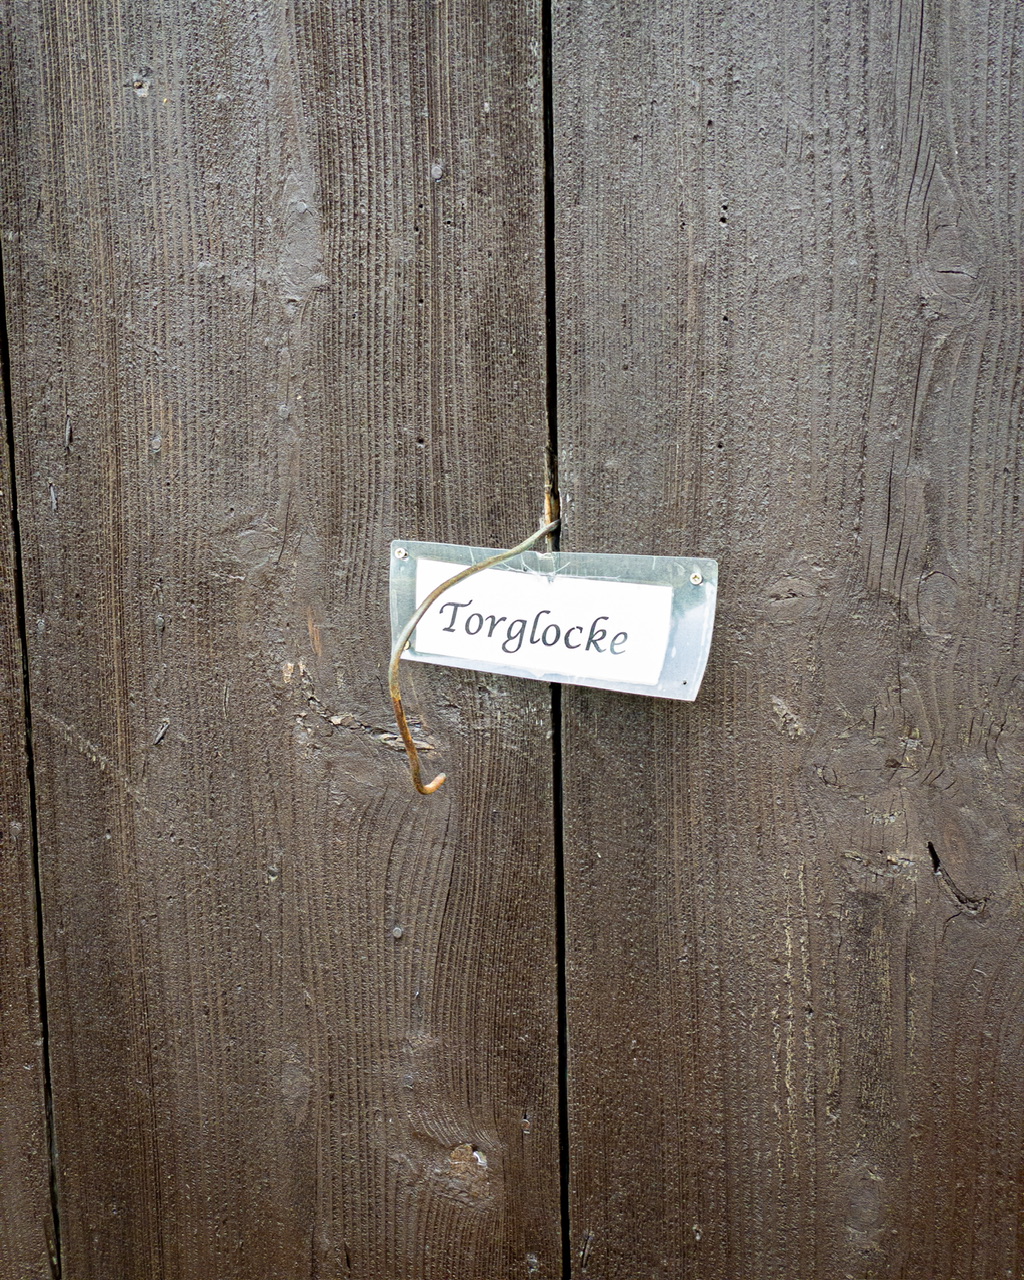 Ein hölzernes Tor an dem ein leerer Drahtbügel hängt und ein Schild mit der Aufschrift „Torglocke“ hängt.